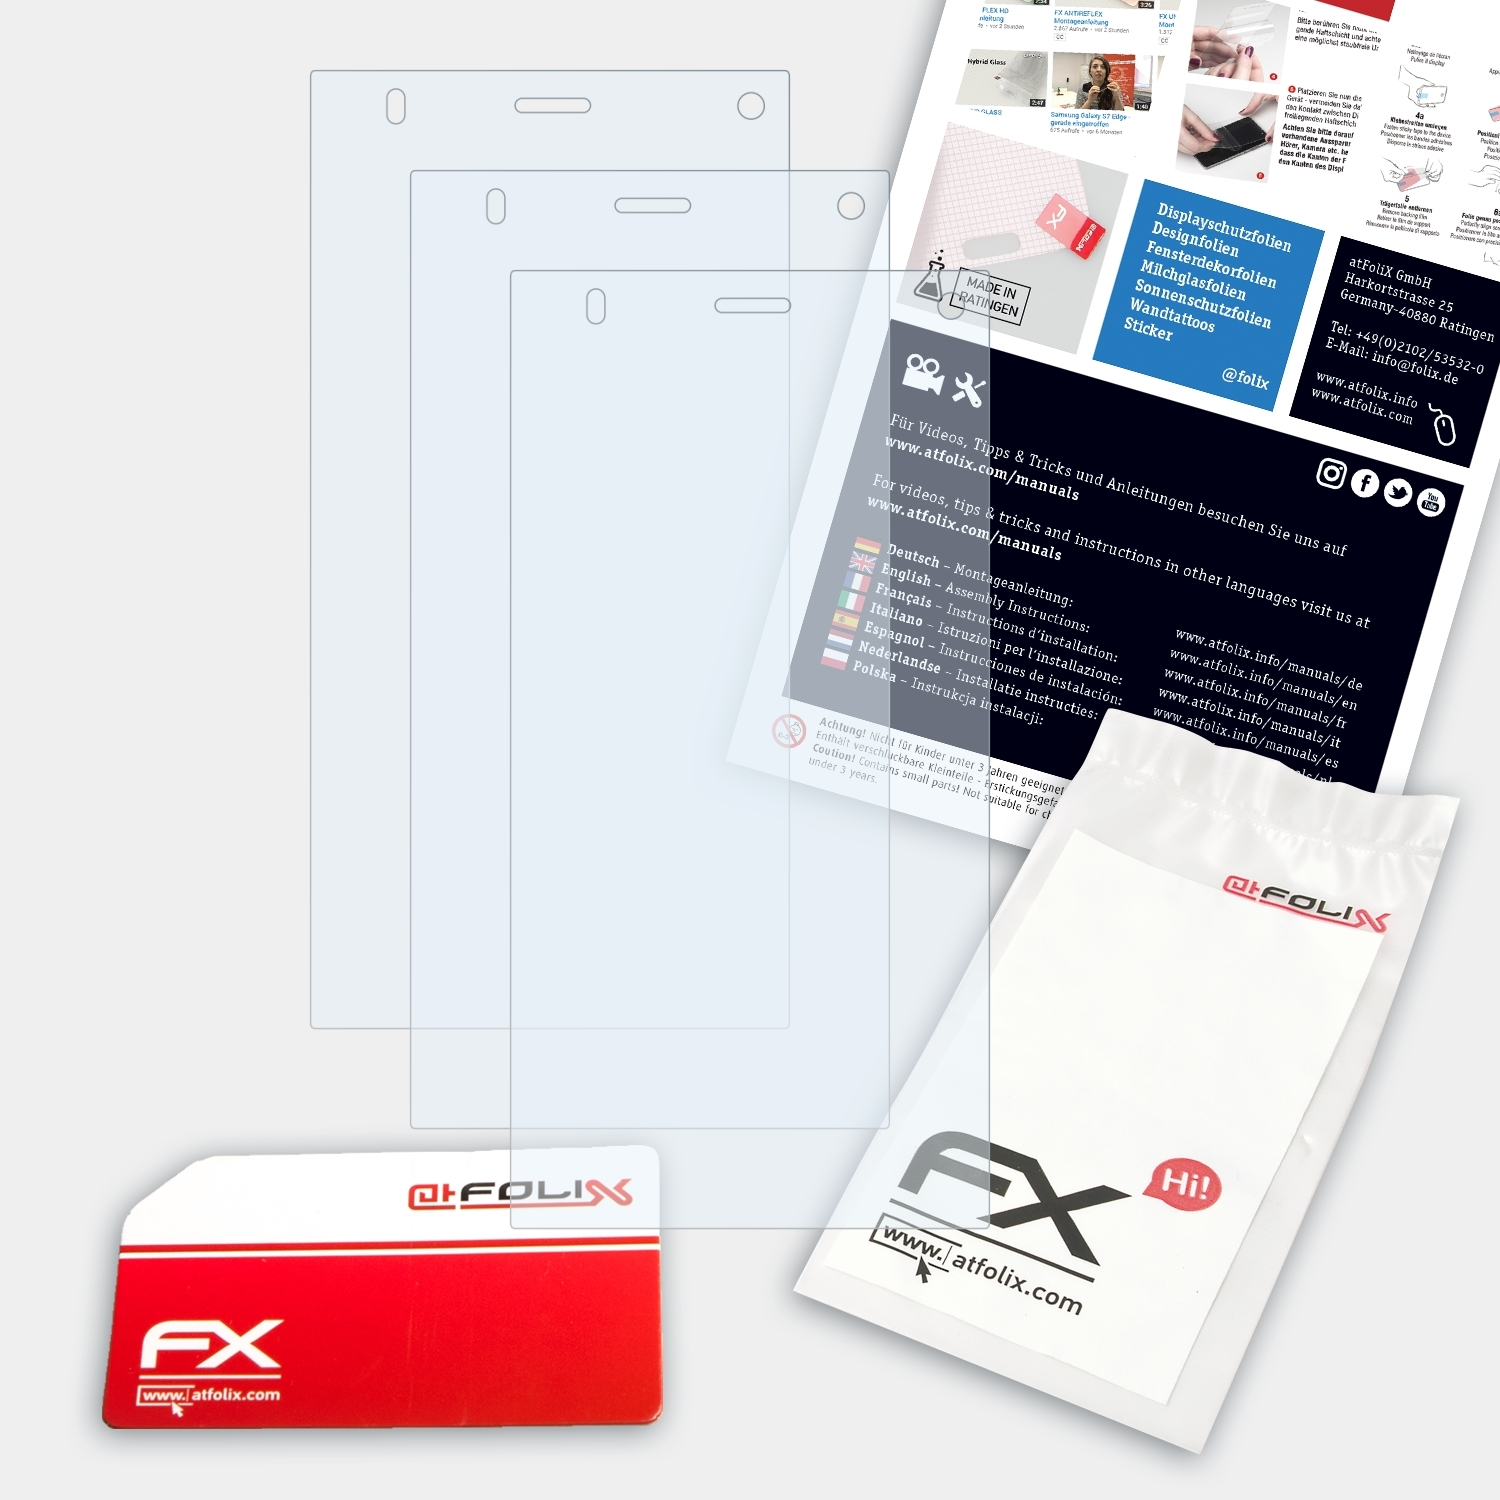 ATFOLIX 3x FX-Clear Displayschutz(für Medion LIFE P5015 (MD99386))